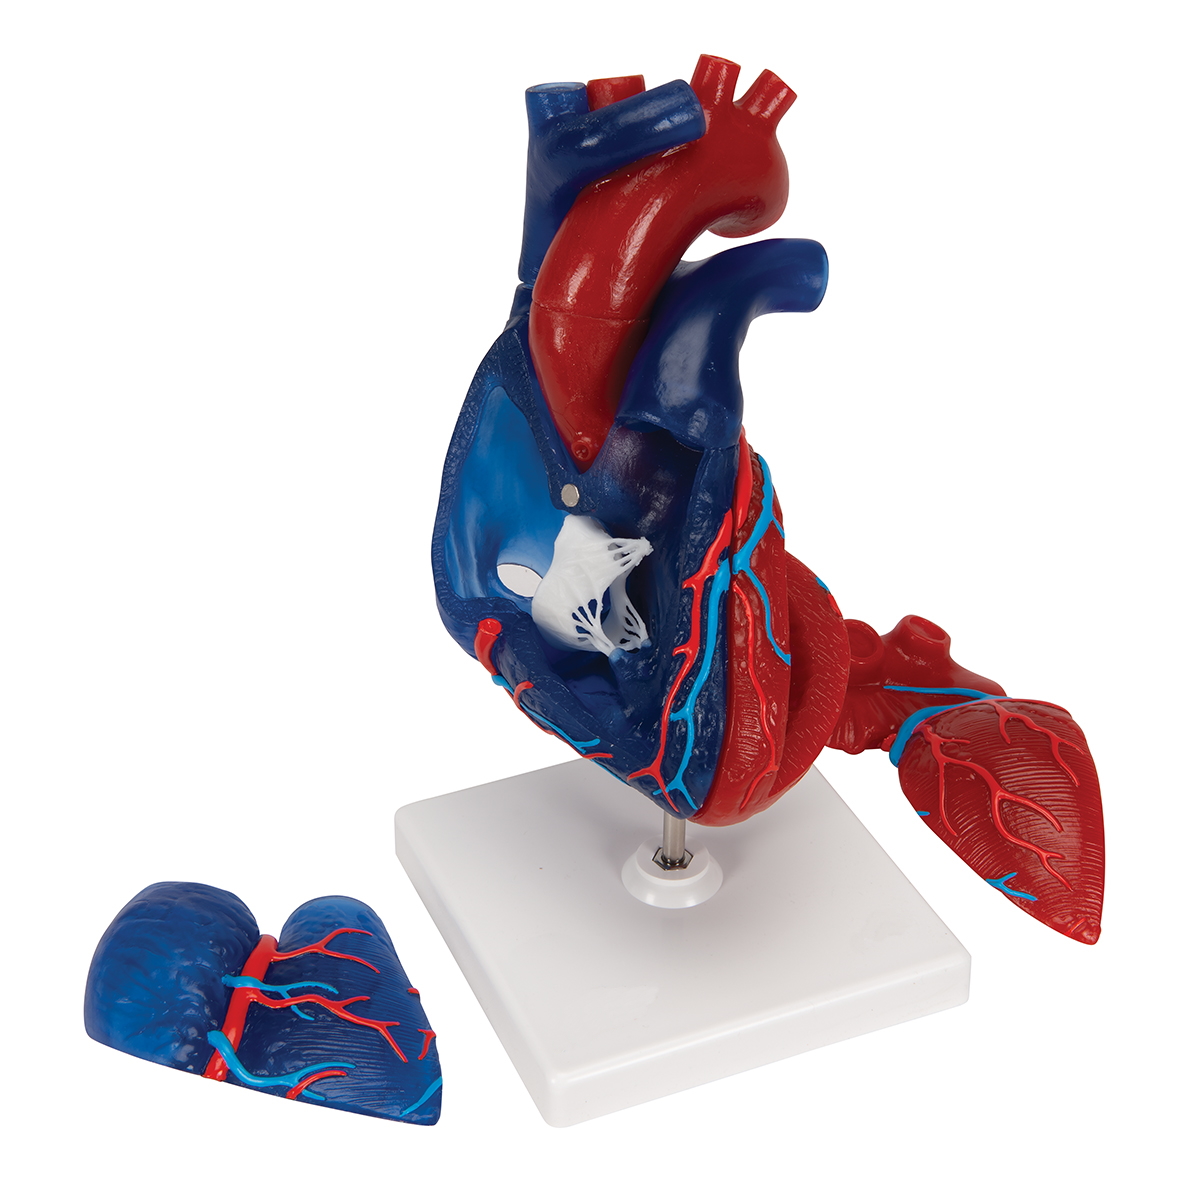 НОВИНКА // Модель сердца человека в натуральную величину, 5 частей